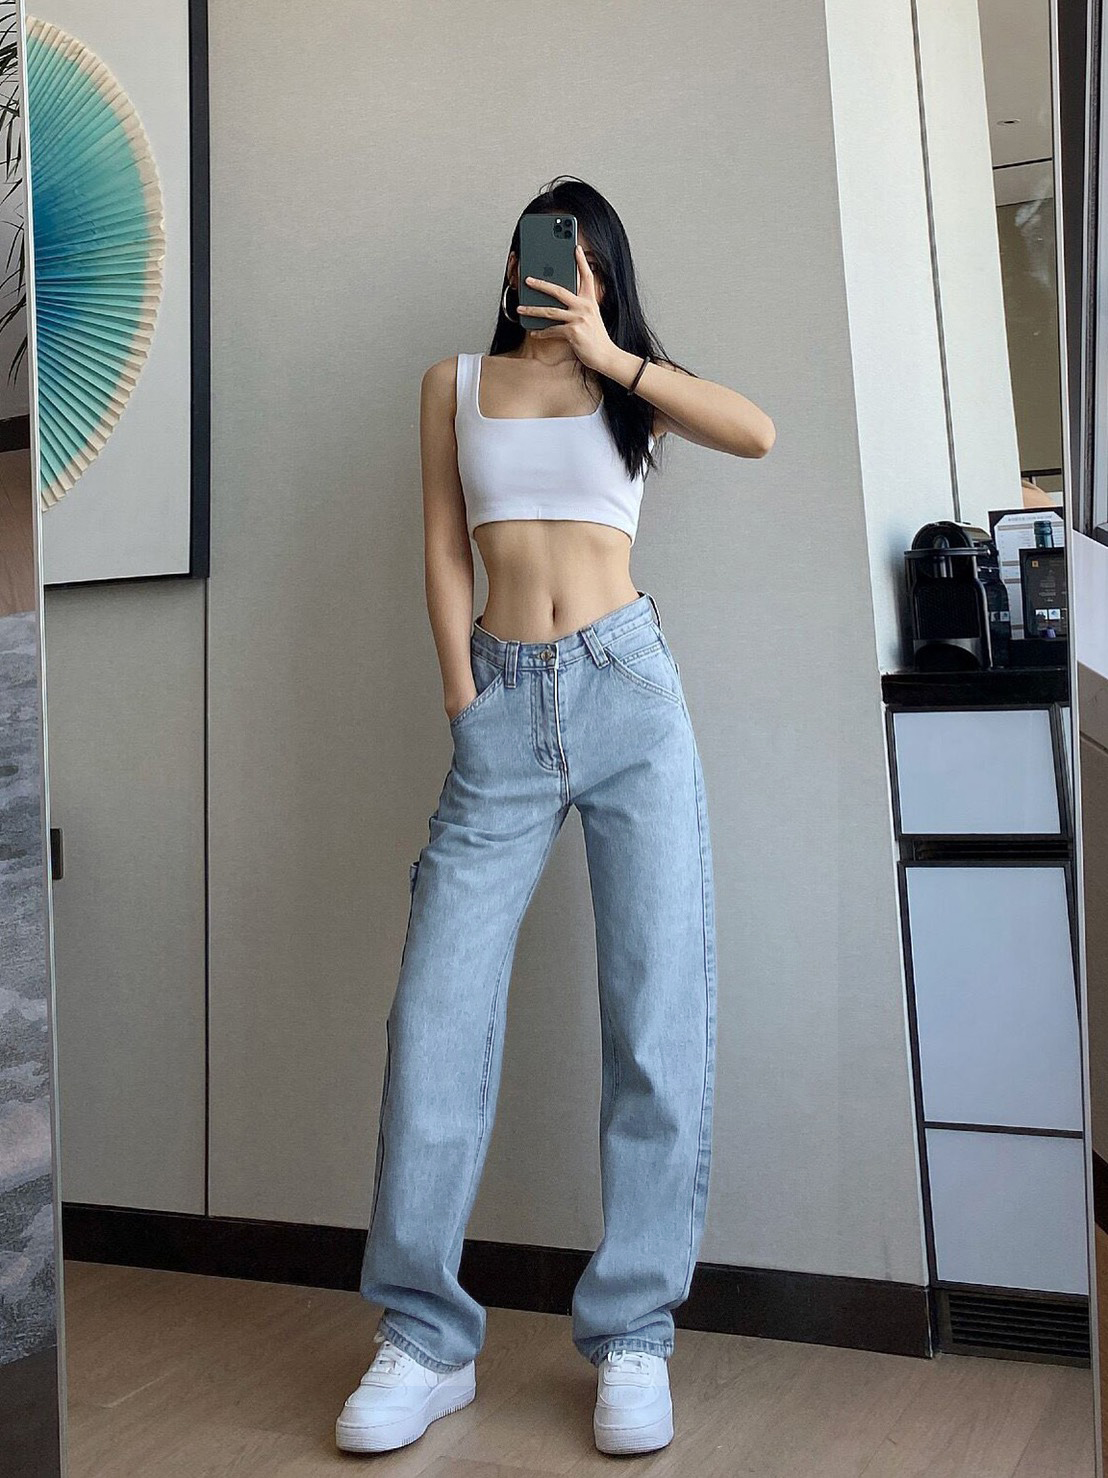 ภาพอธิบายเพิ่มเติมของ 【S/M/L/XL】Girls jeanswaist jeans female straight old pants 2021 new Hong Kong taste ตาข่ายสีแดงกางเกงยีนส์เอวสูงหญิงกางเกงเก่าตรง ใหม่ฮ่องกงรสชาติผ้าม่านกว้างกางเกงขา